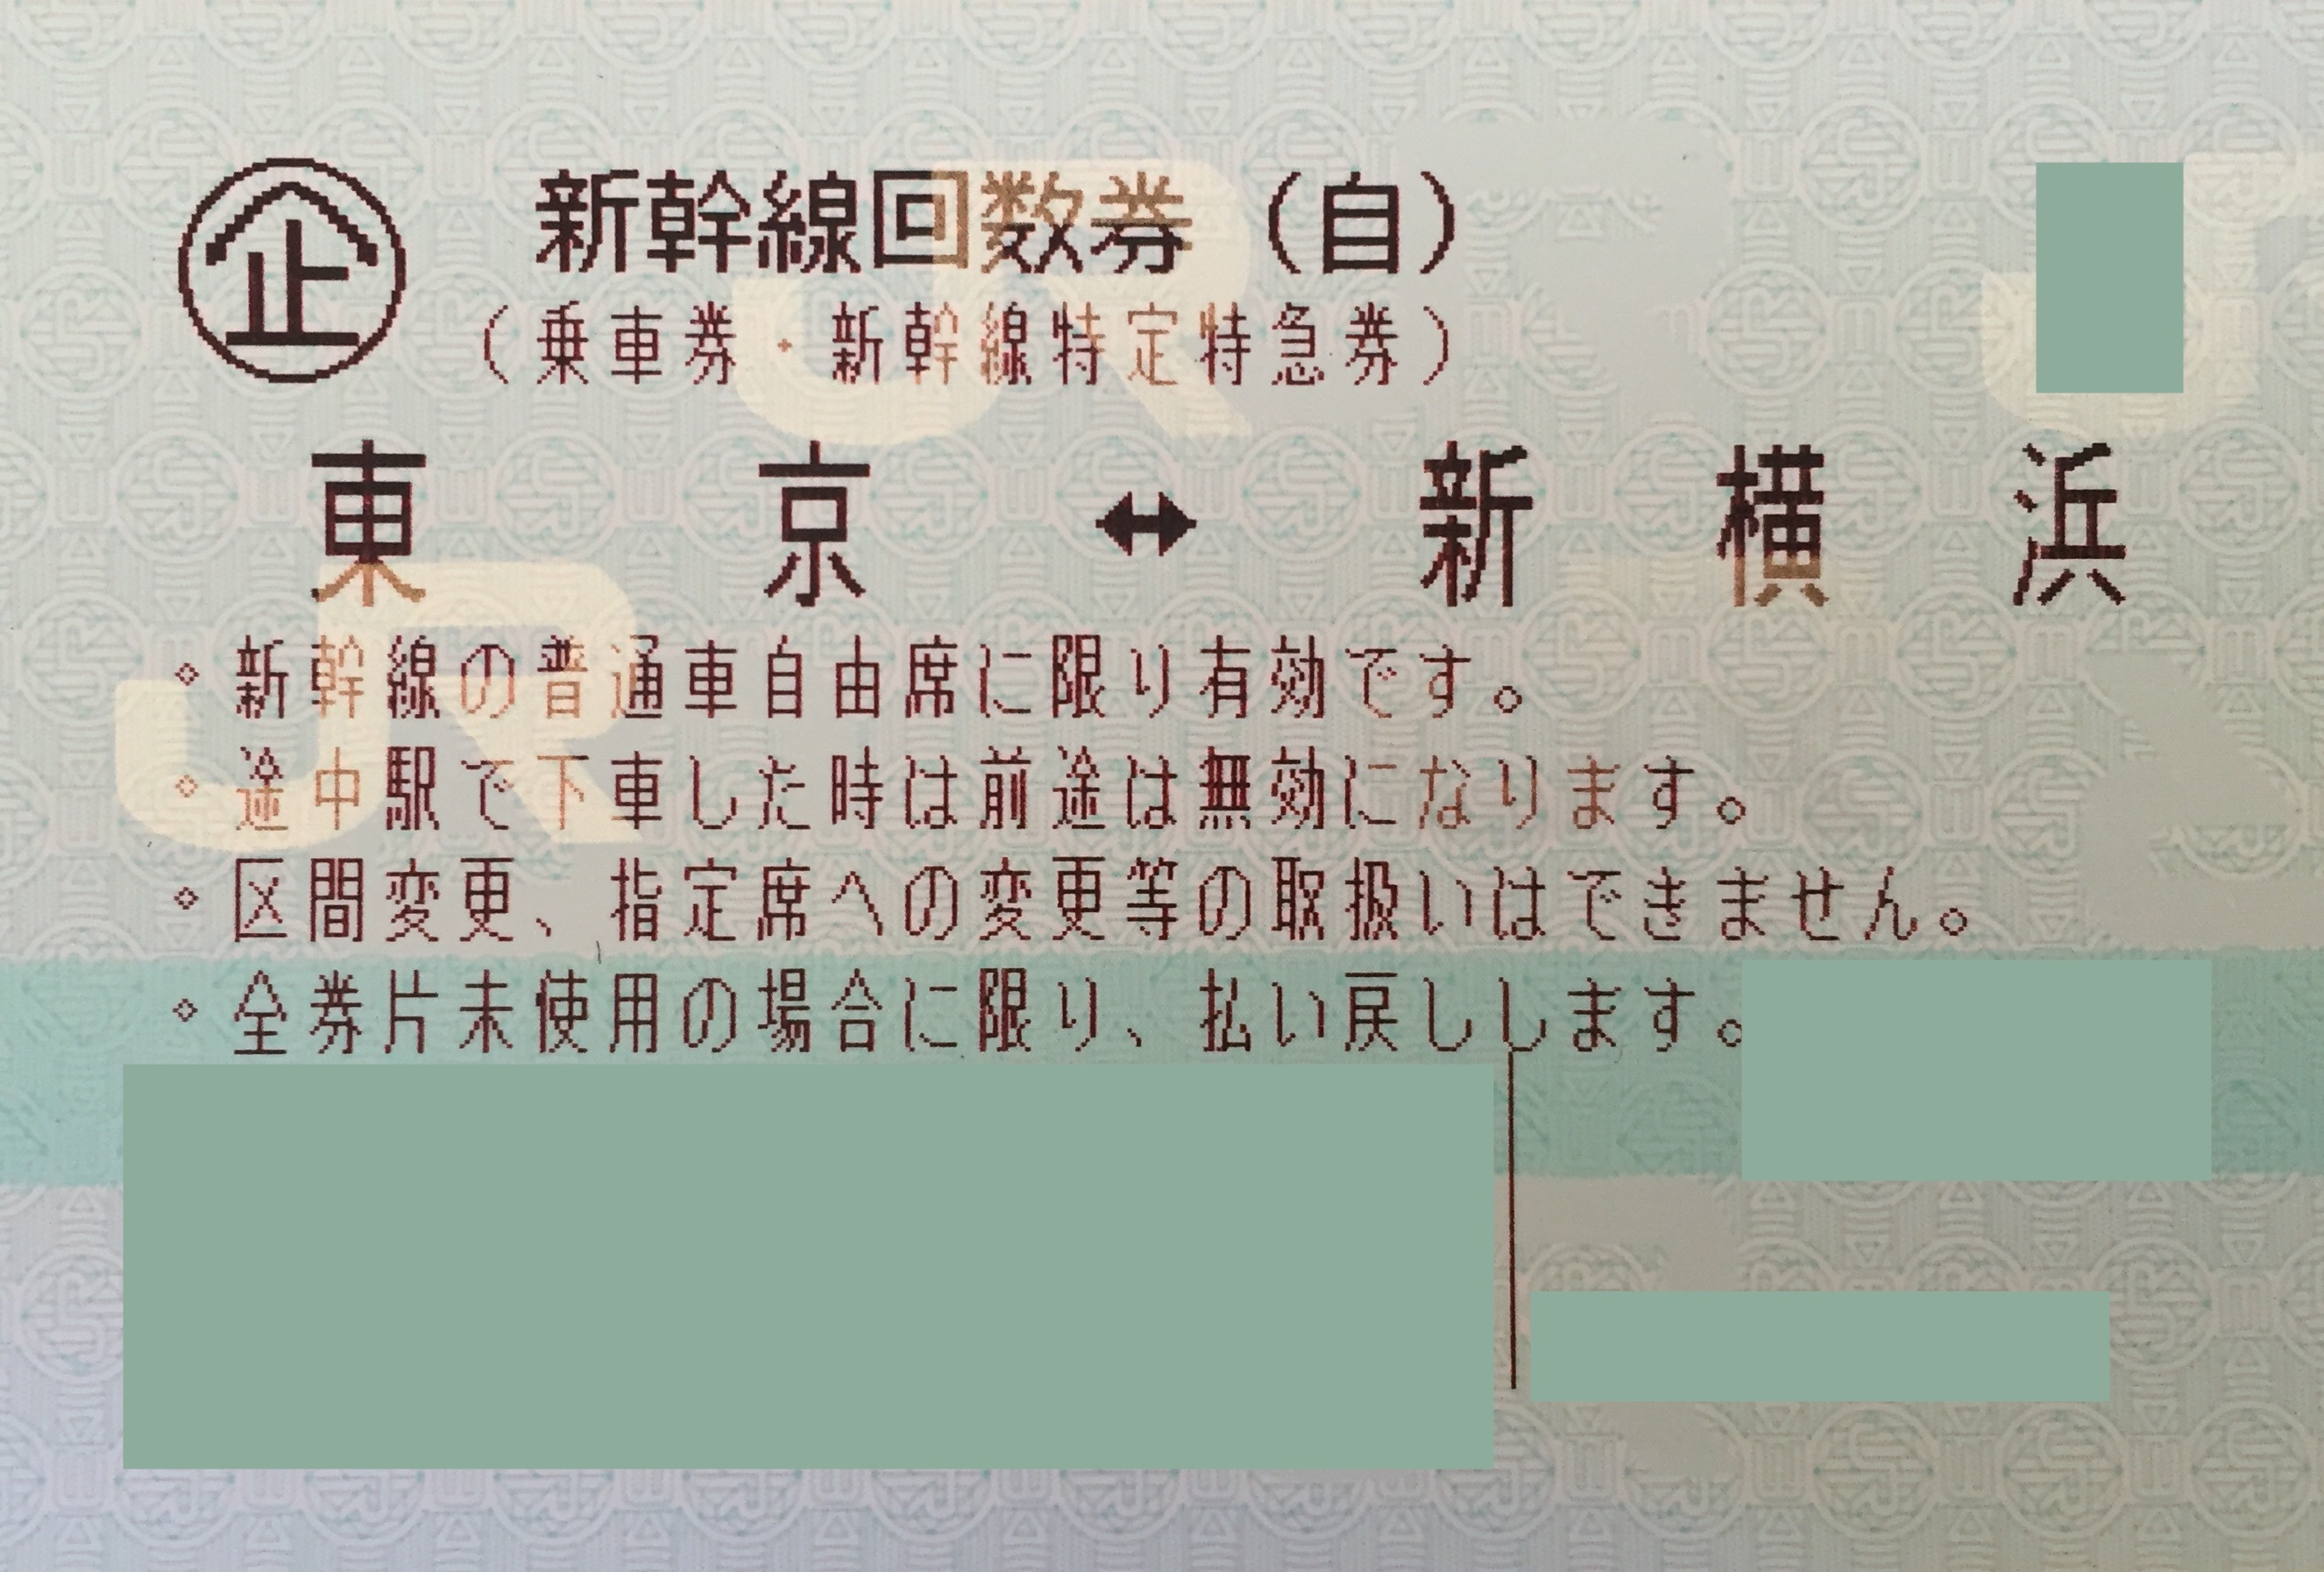 東京-新横浜 新幹線自由席回数券(東海道新幹線) | 新幹線回数券の格安